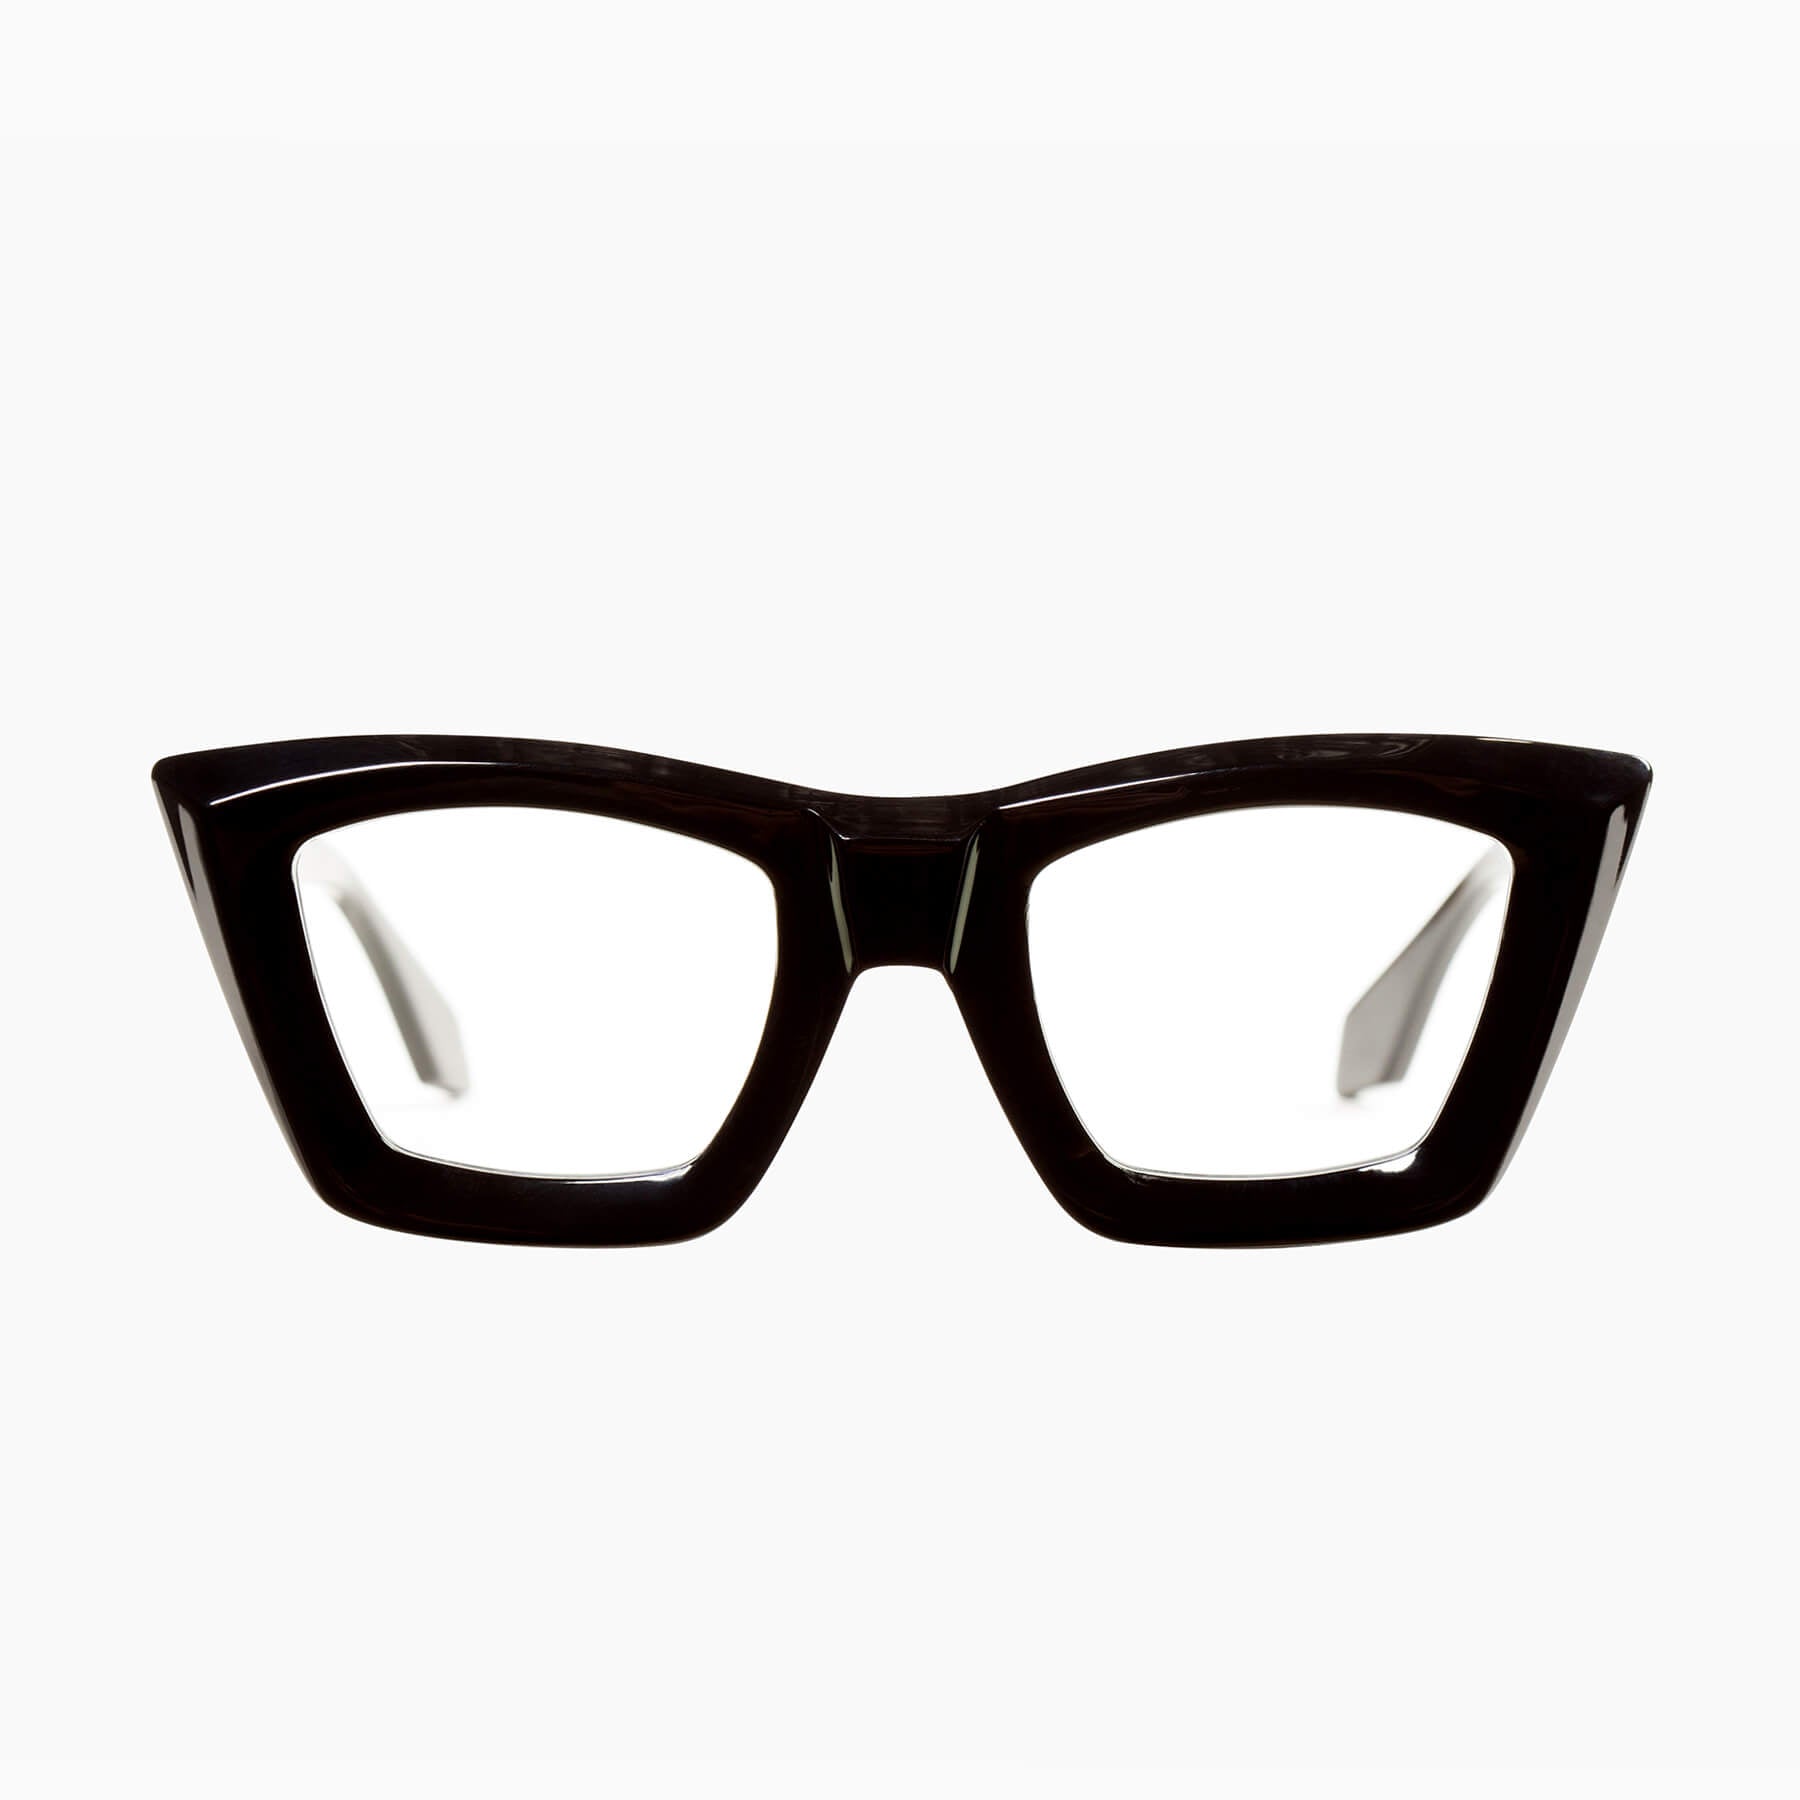 Eyeglass Frames Women Black, Thick Black Frame Glasses